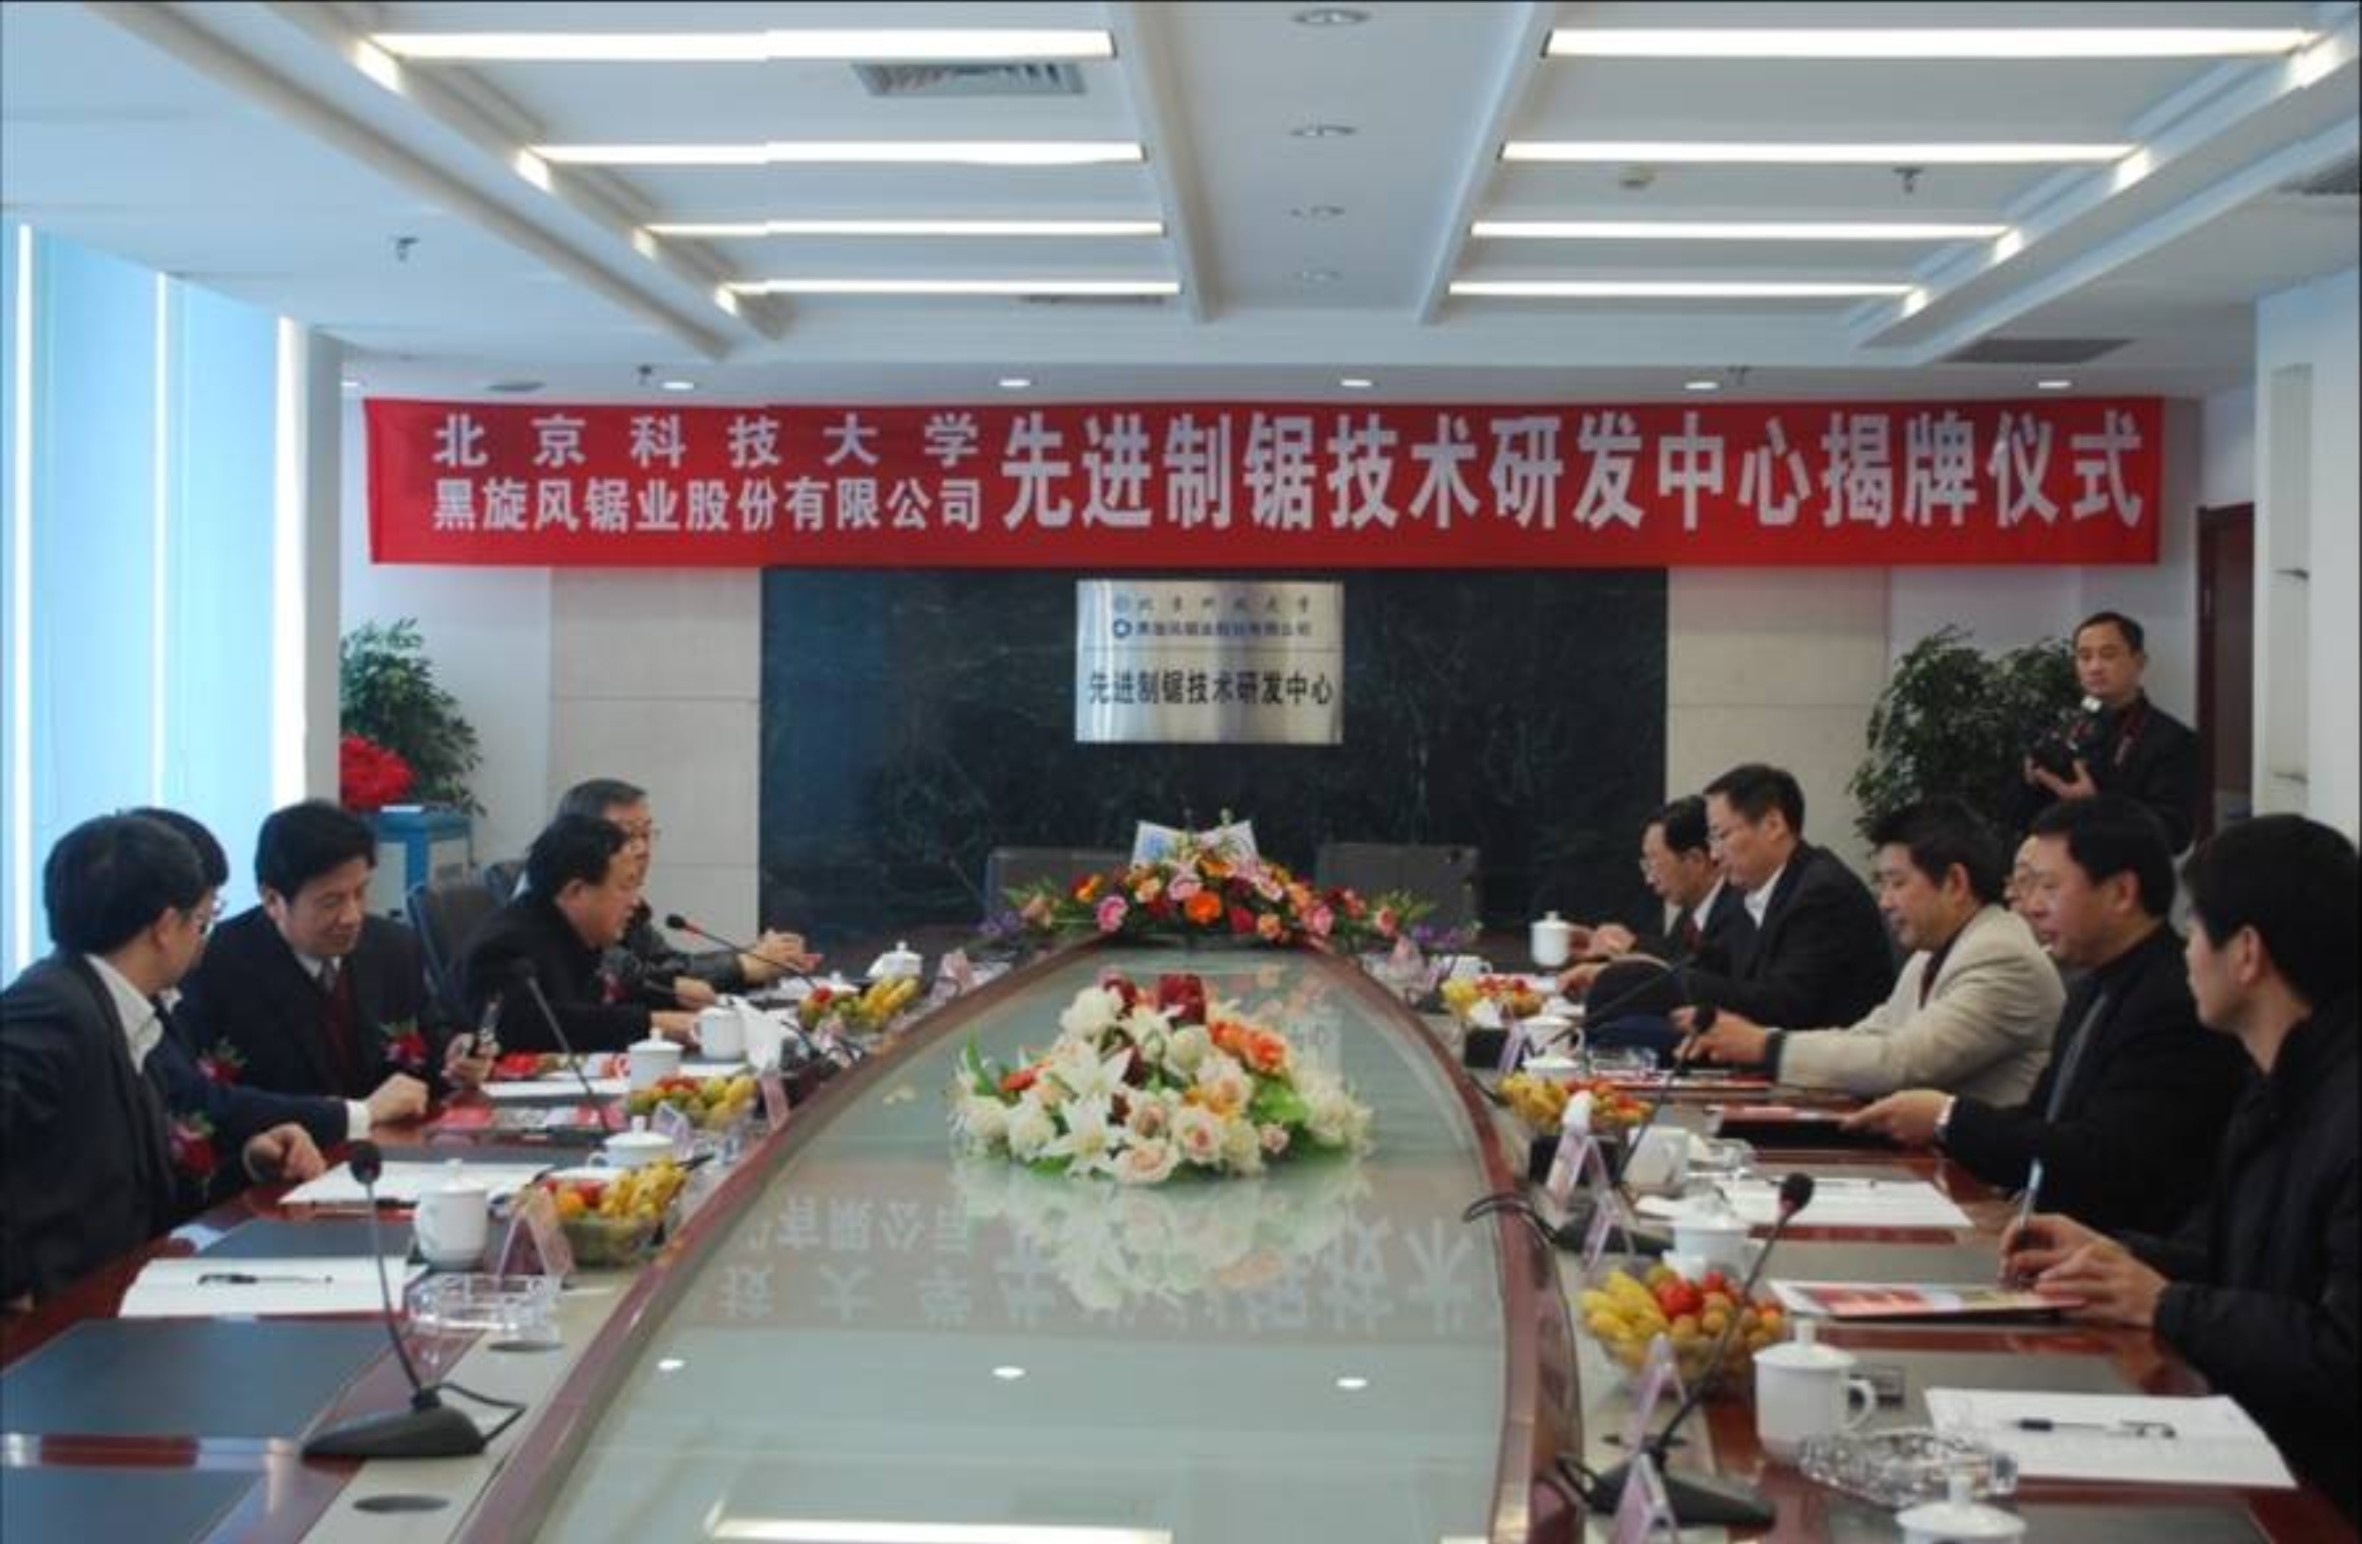 4.2009年12月1日北京科技大学与黑旋风共同组建先进制锯技术研发中心